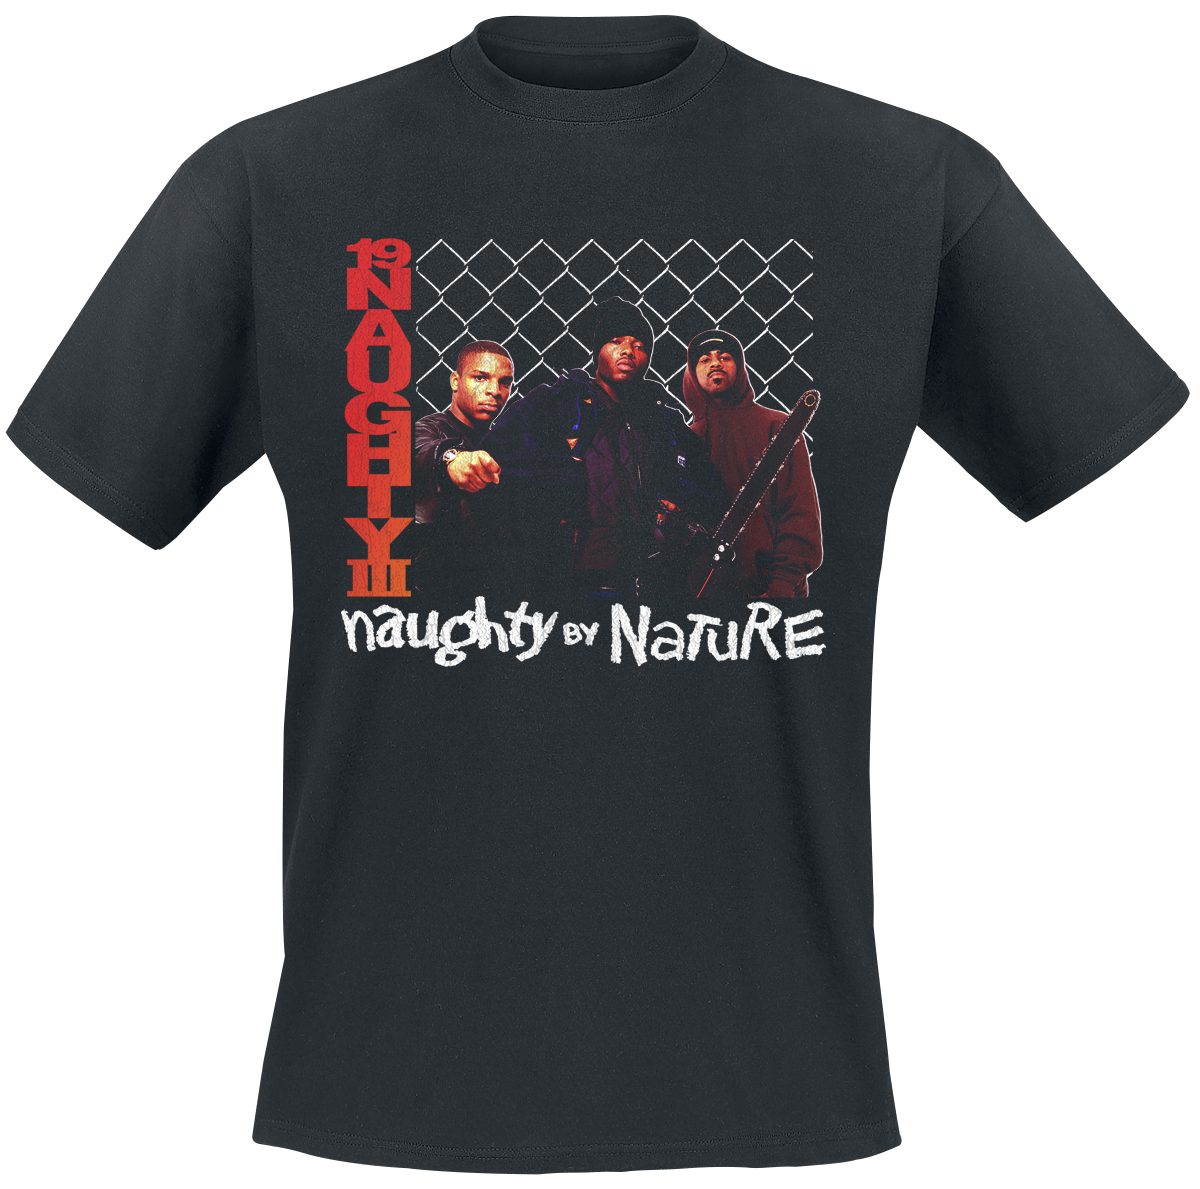 Naughty by Nature - 19 Naughty 111 - T-Shirt - schwarz